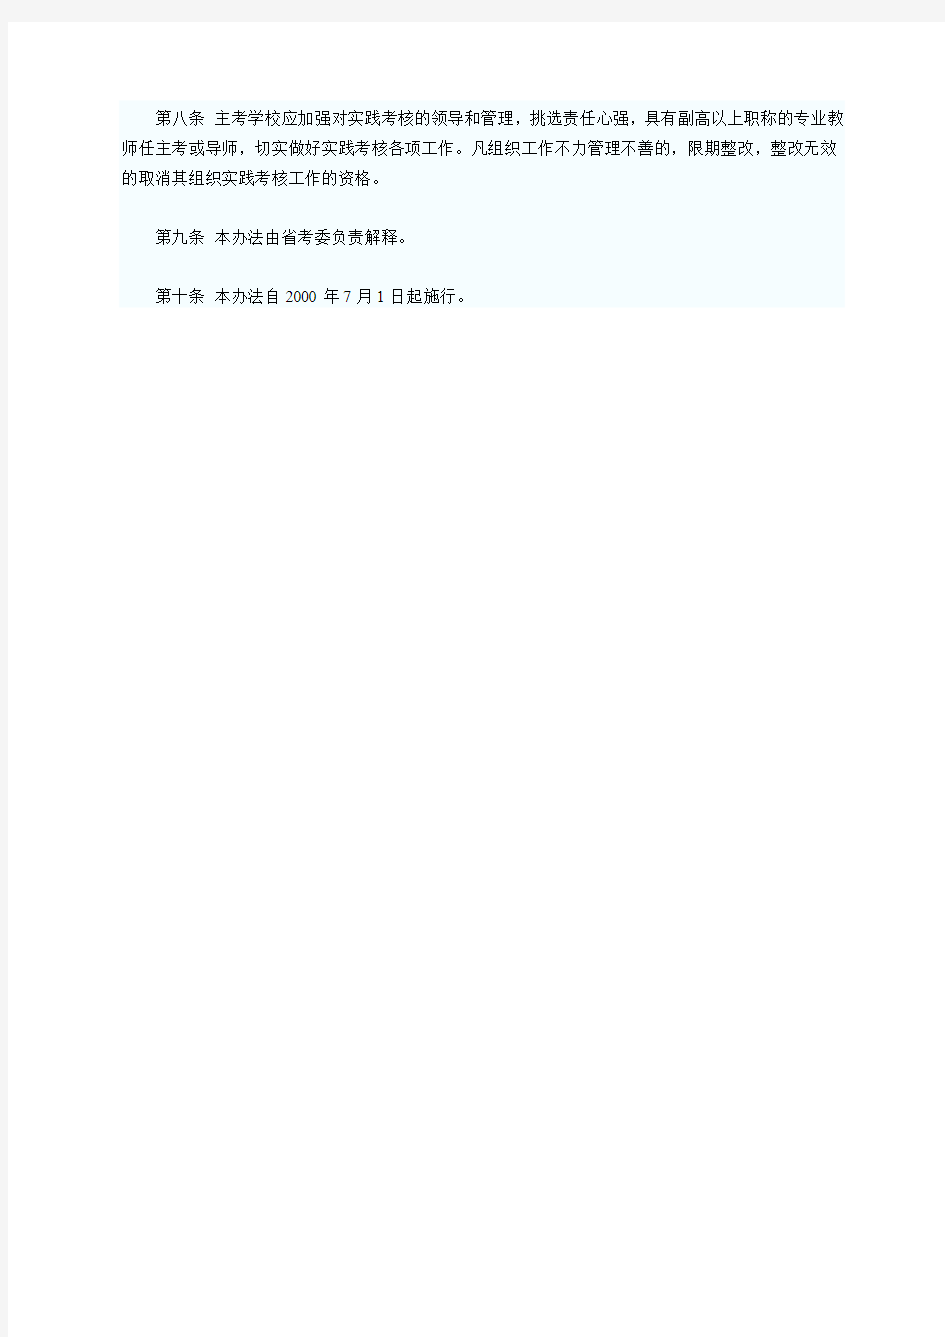 广东省自学考试实践考核管理办法